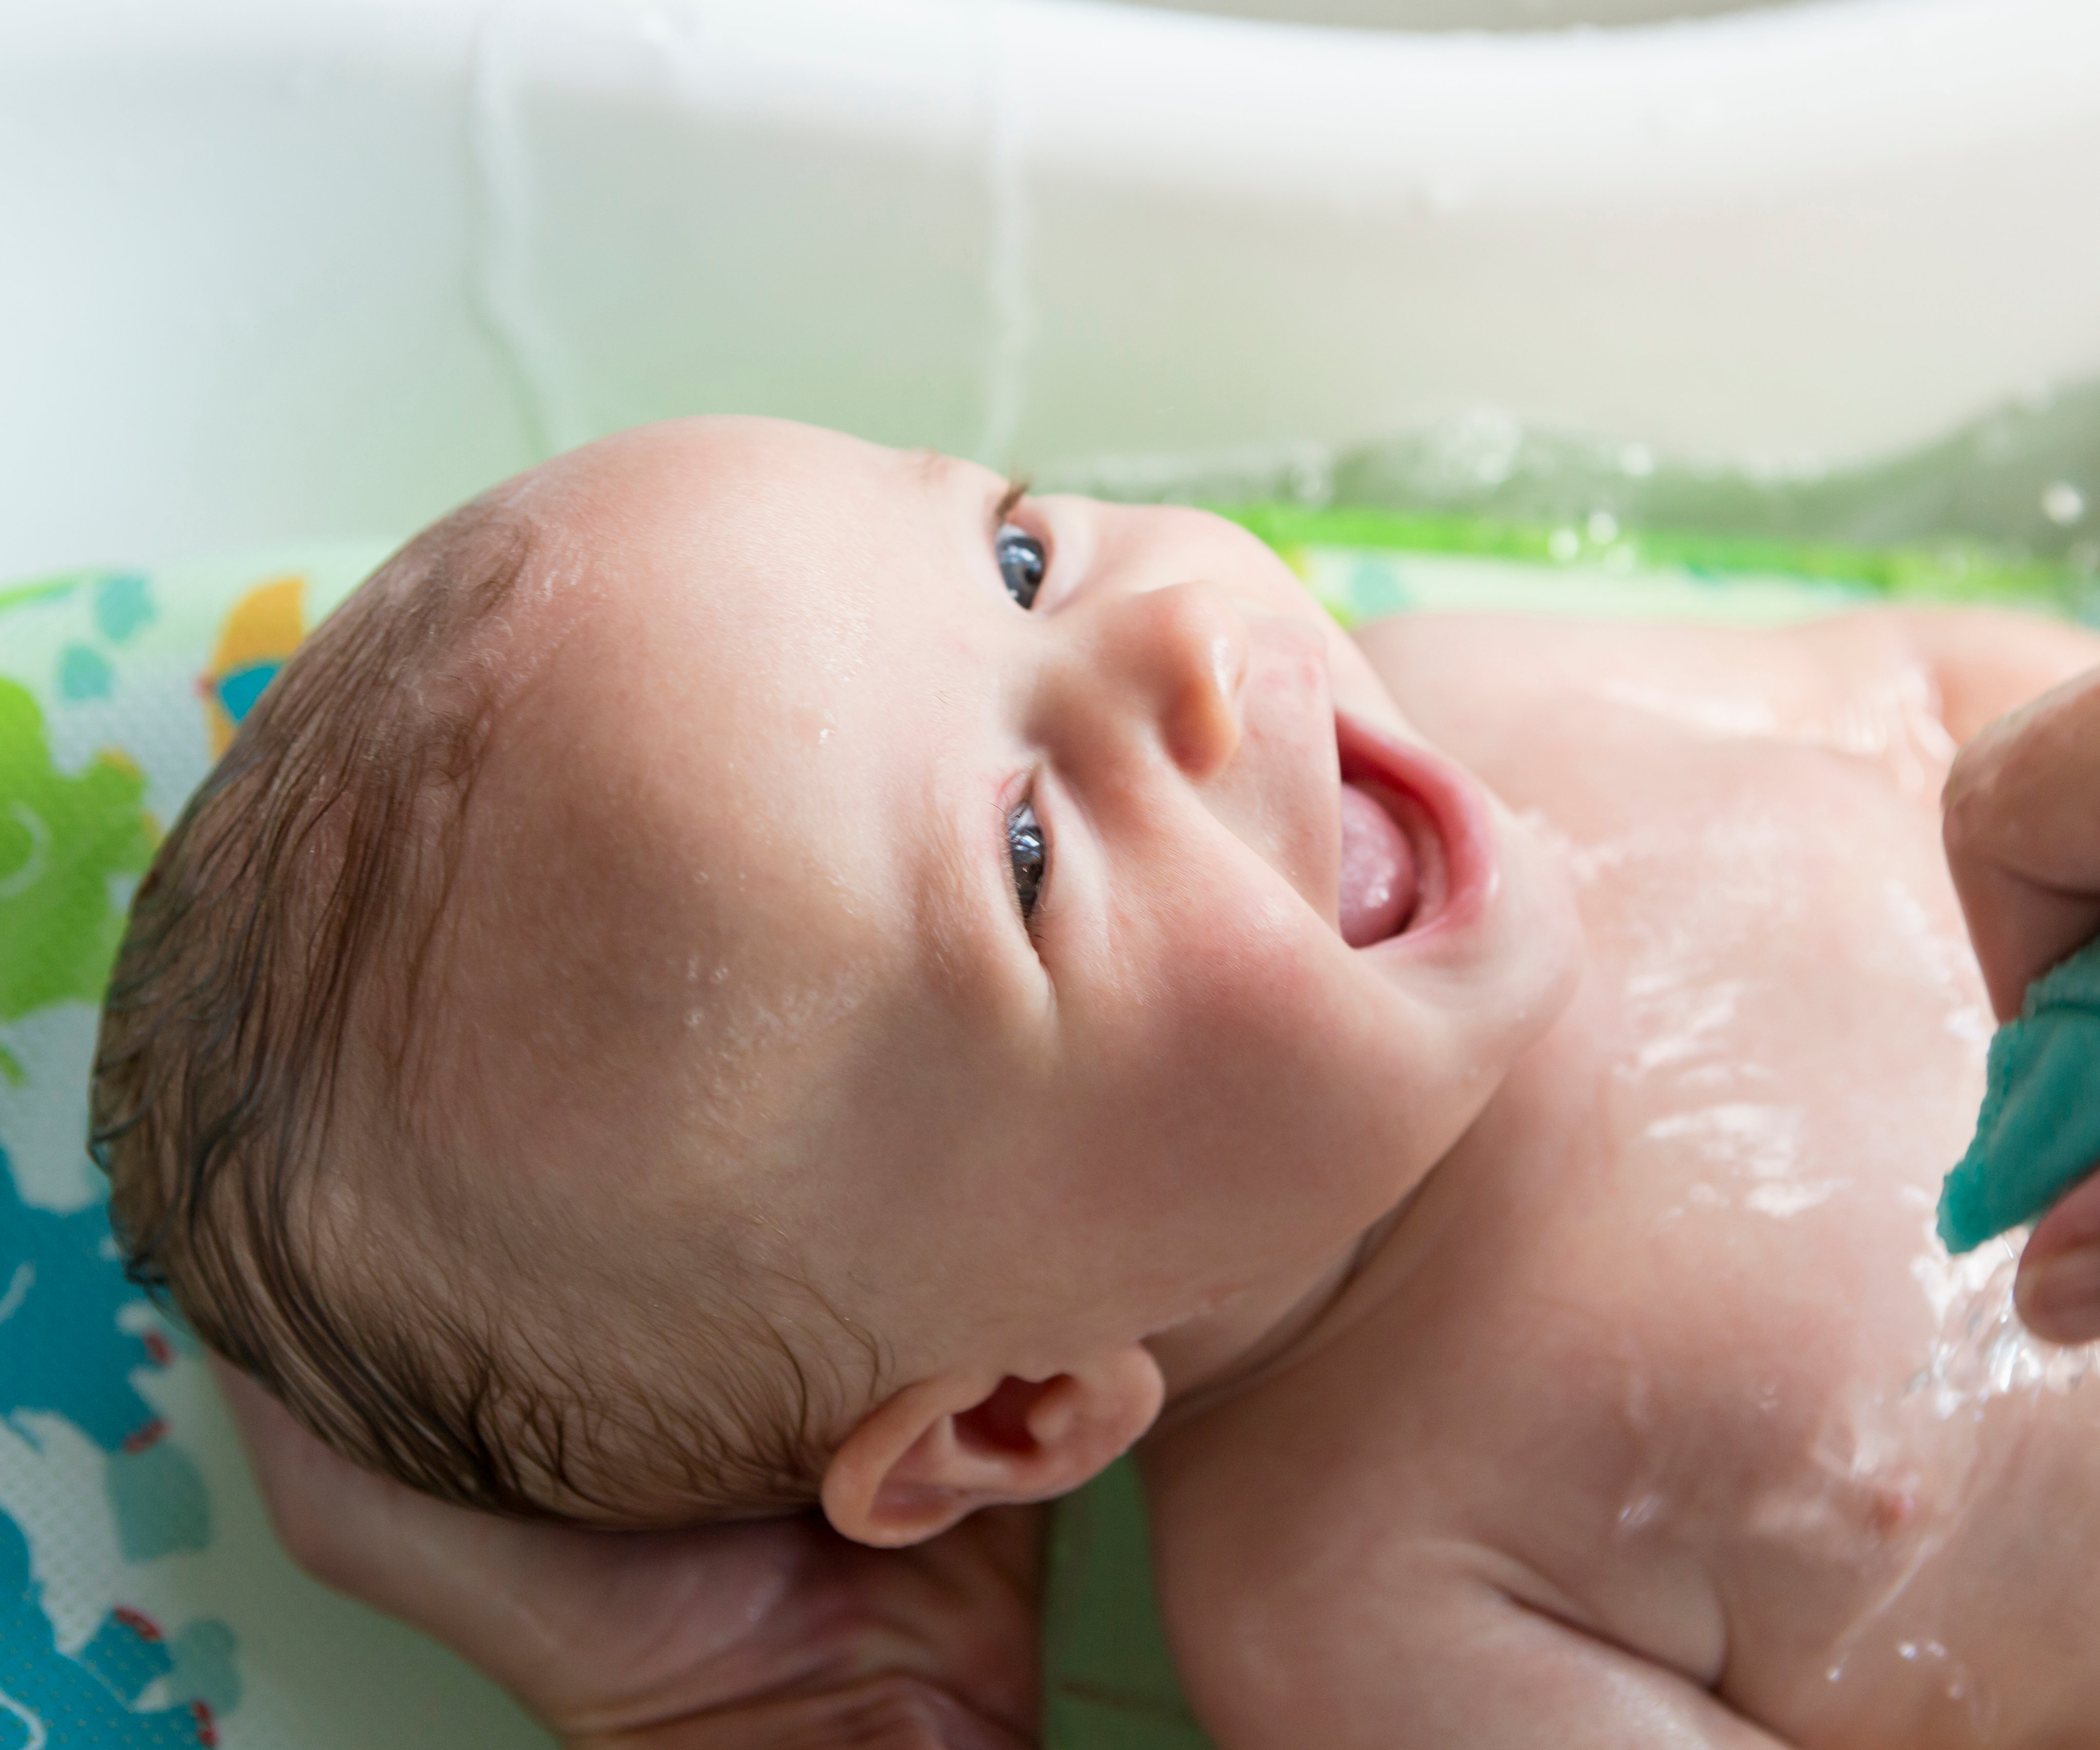 Baignoires bébé, serviettes bébé et transats de bain bébé - Bambinou